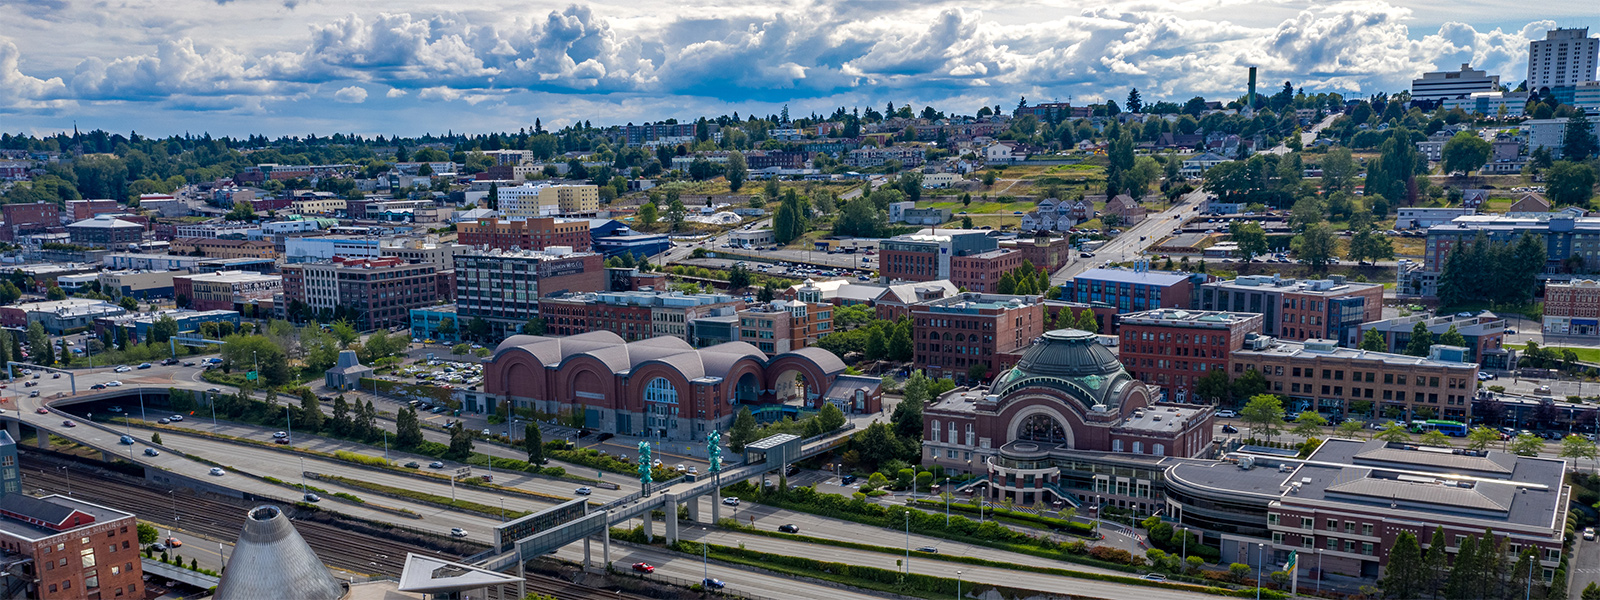 Aerial image of UW Tacoma campus